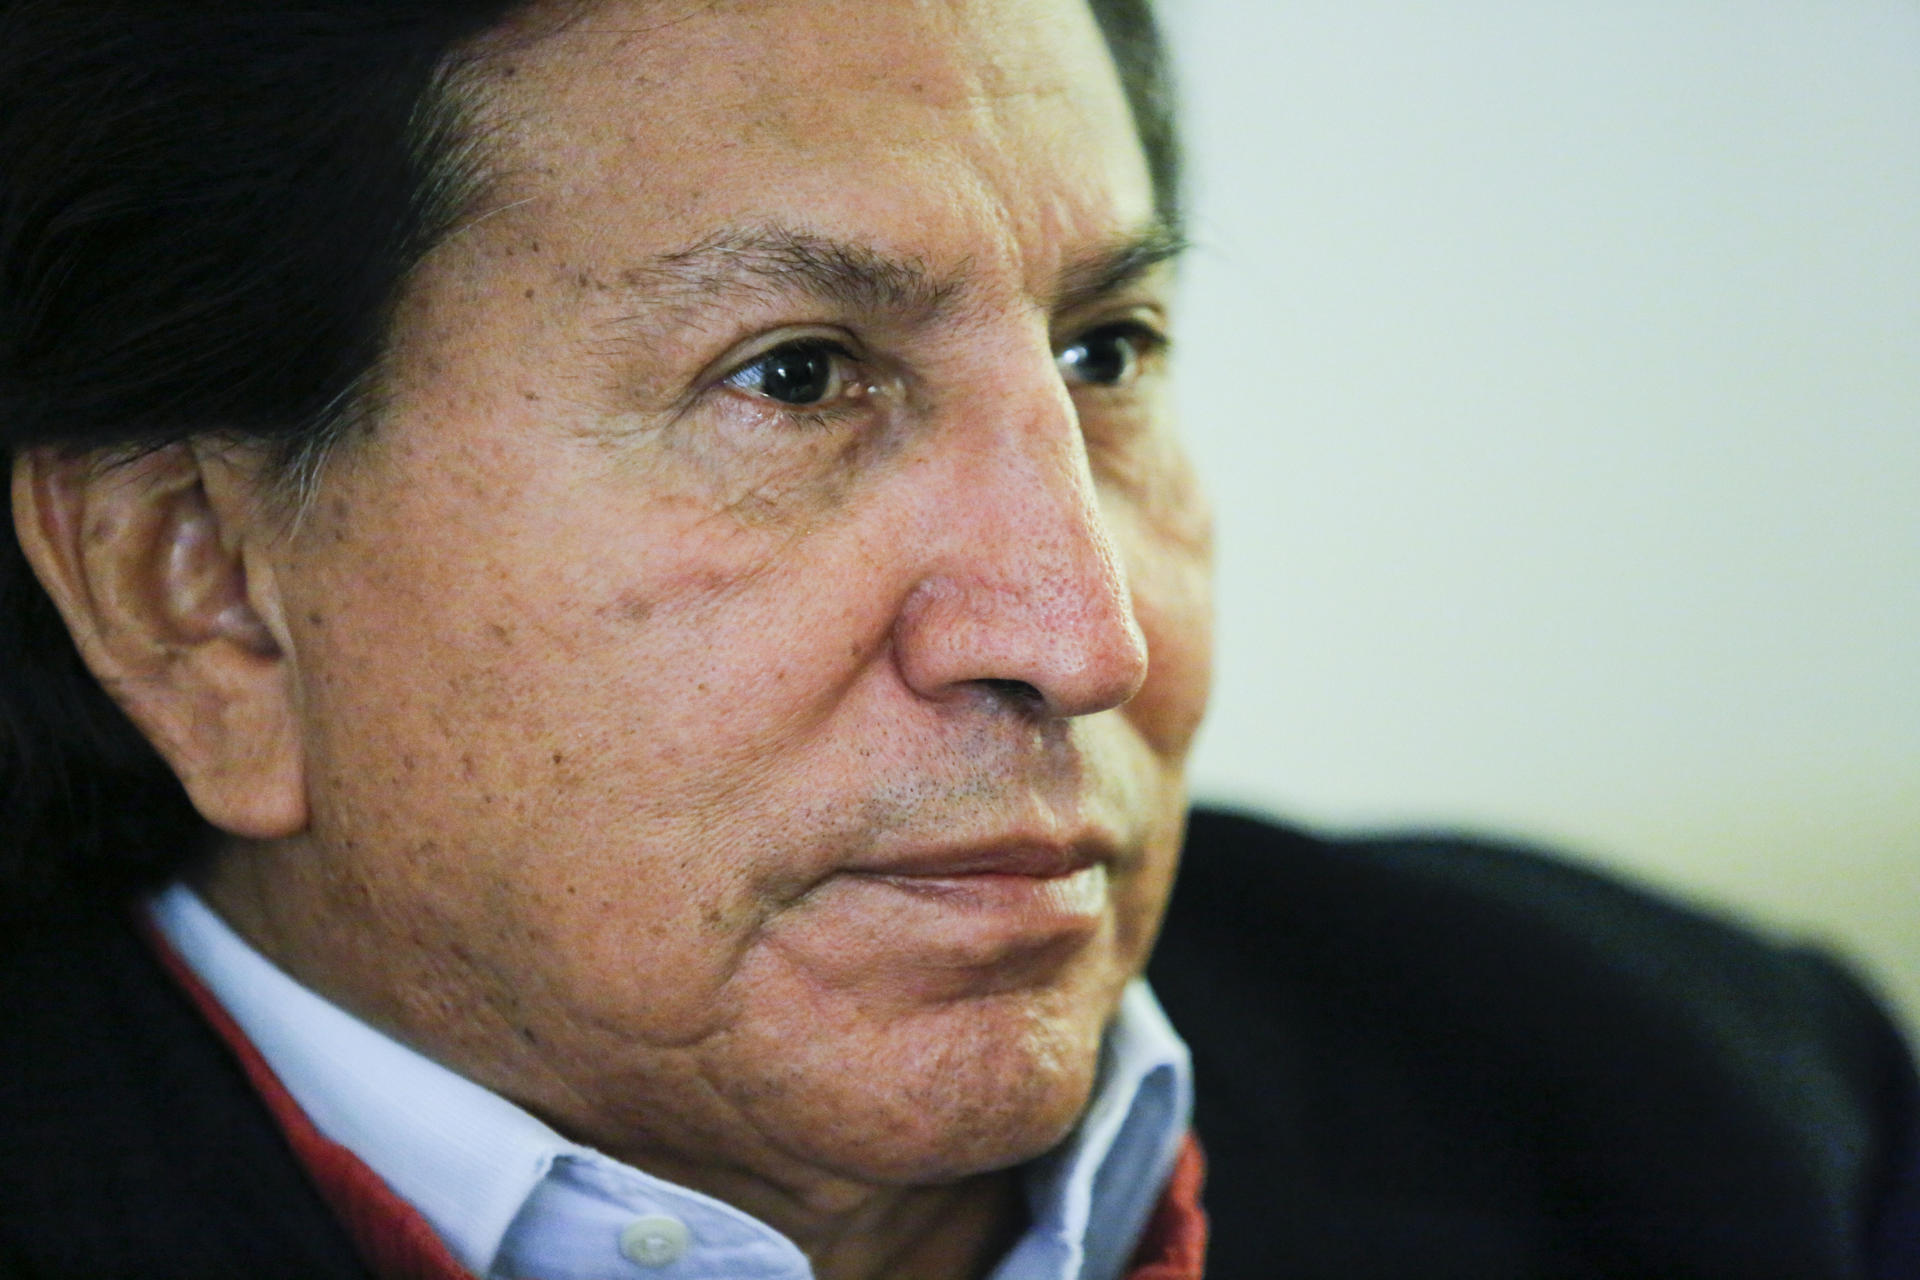 El expresidente peruano Alejandro Toledo, en una fotografía de archivo. EFE/Eduardo Muñoz Álvarez